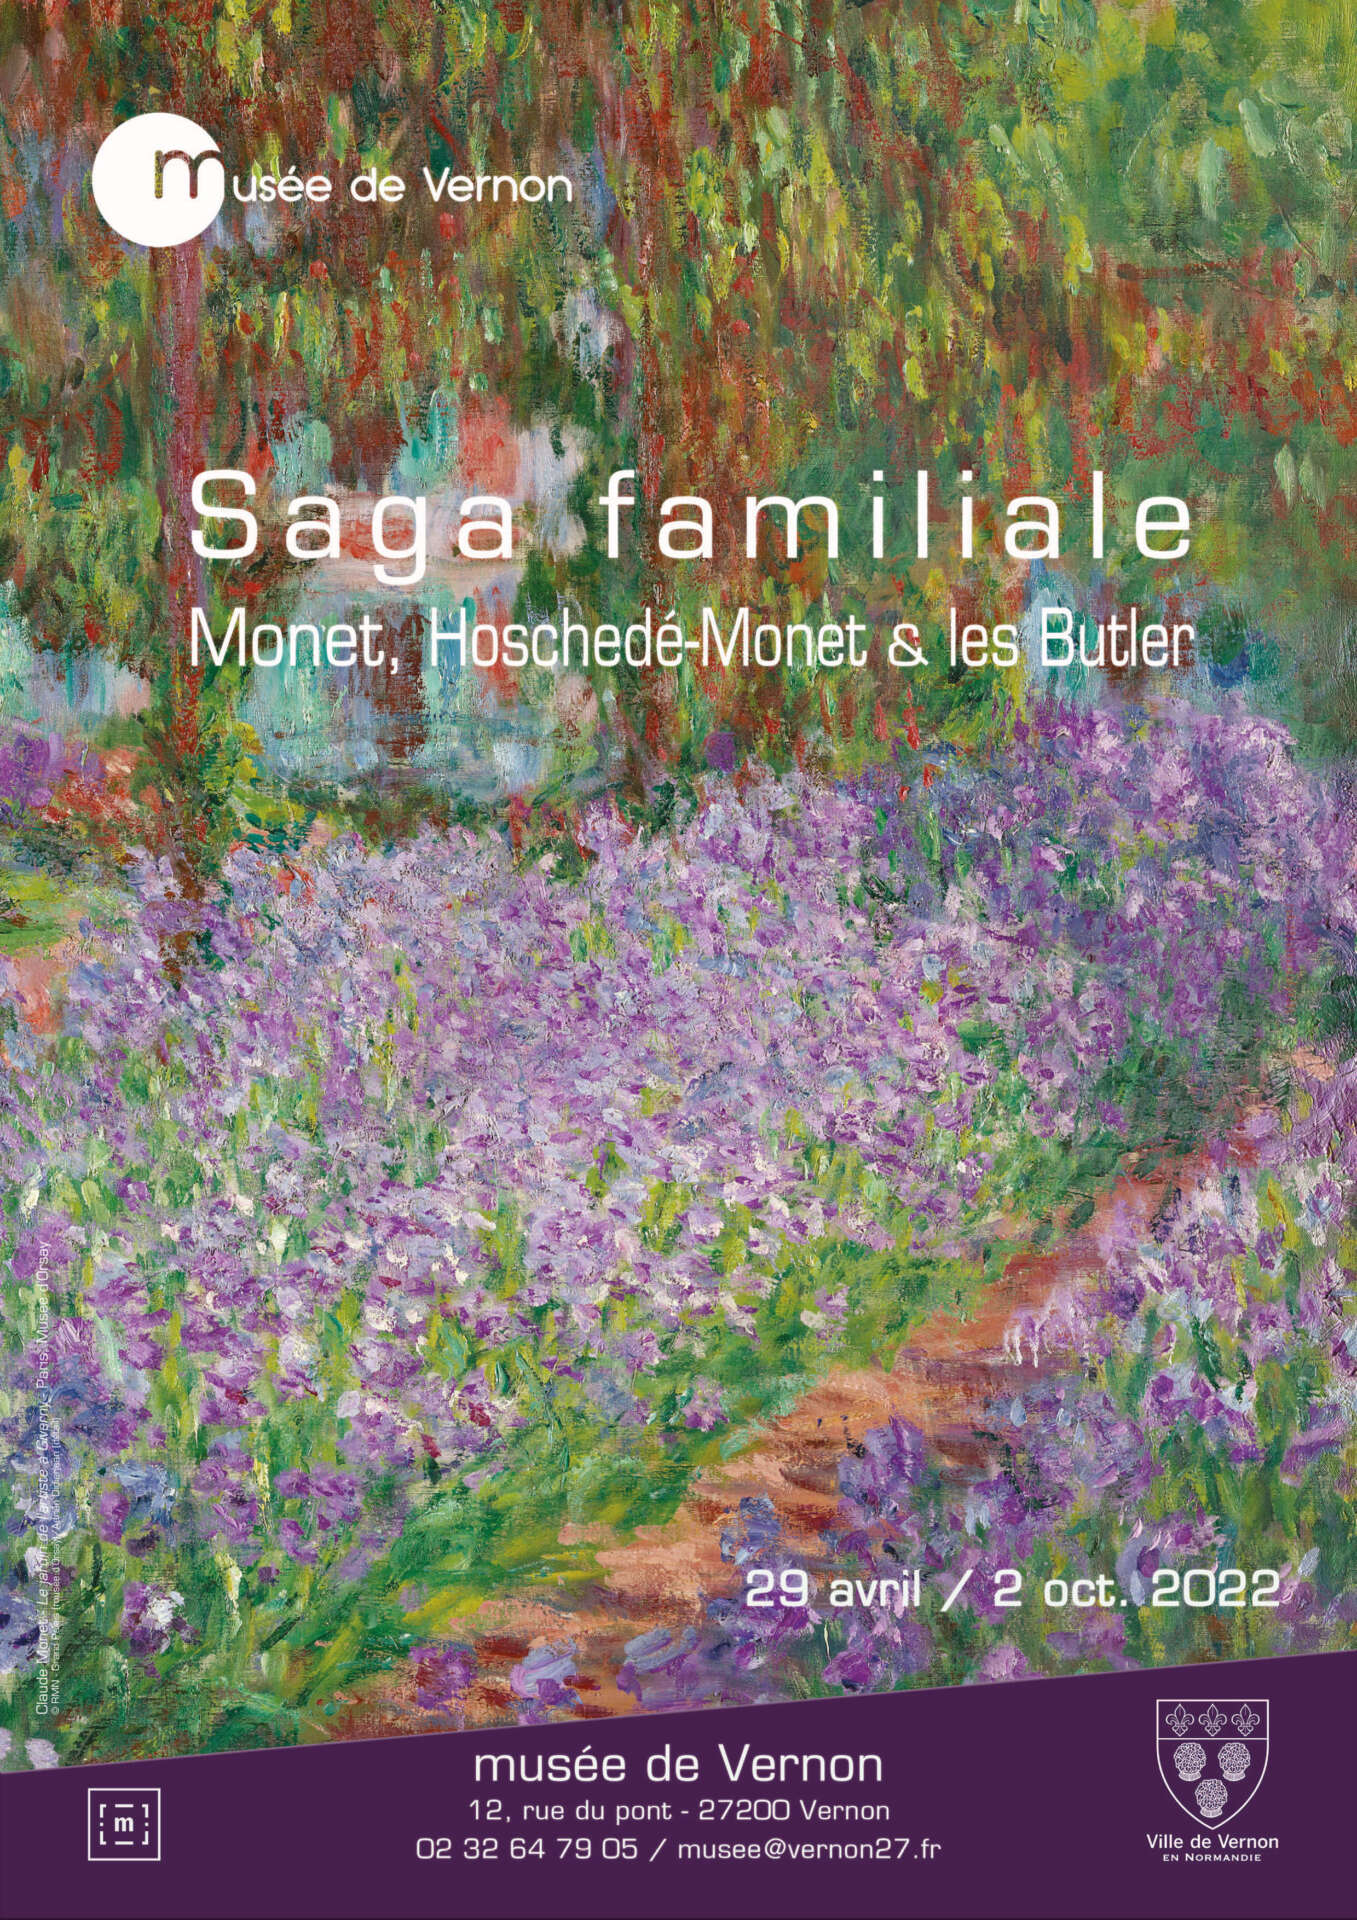 Saga familiale Monet, Hoschedé-Monet et les Butler, affiche de l'exposition